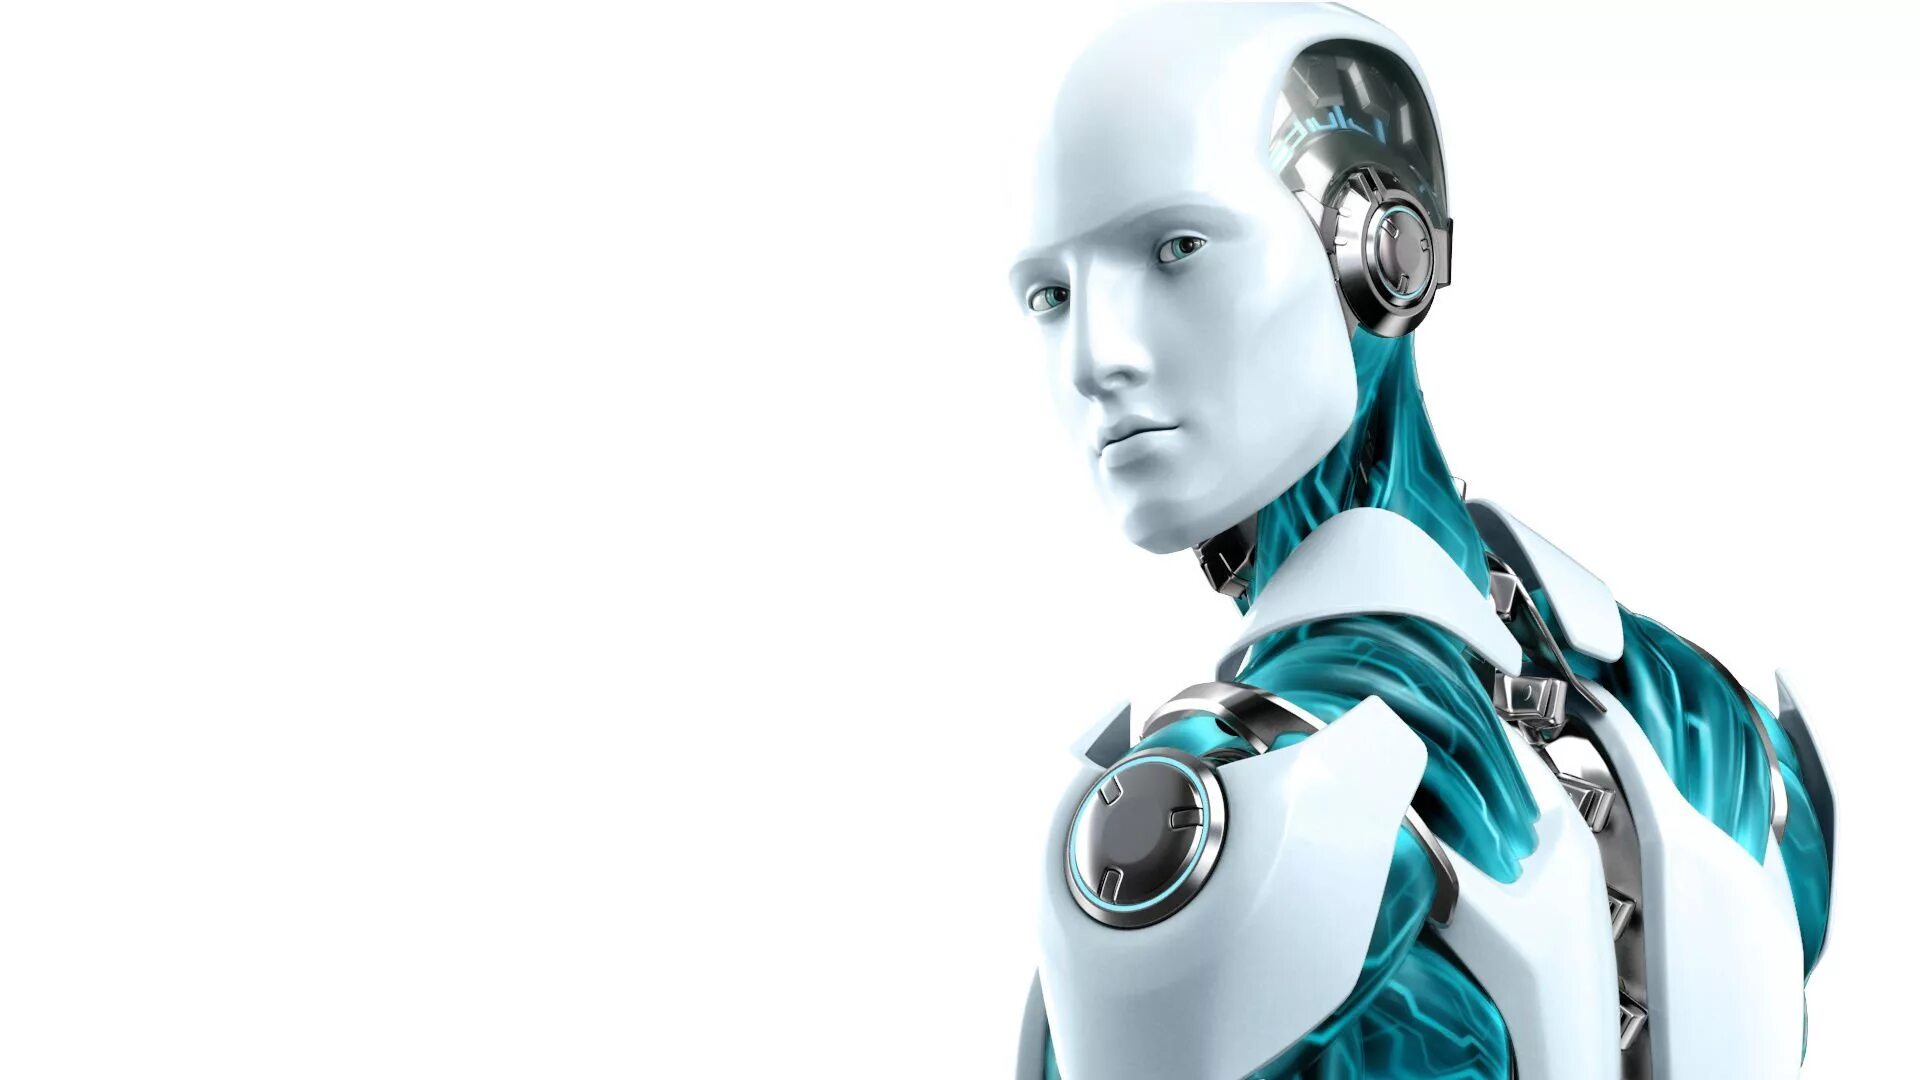 Искусственный интеллект вопросы и ответы. ESET nod32 робот. ESET nod32 Antivirus лого. Робот с искусственным интеллектом. Искусственный интеллект на белом фоне.